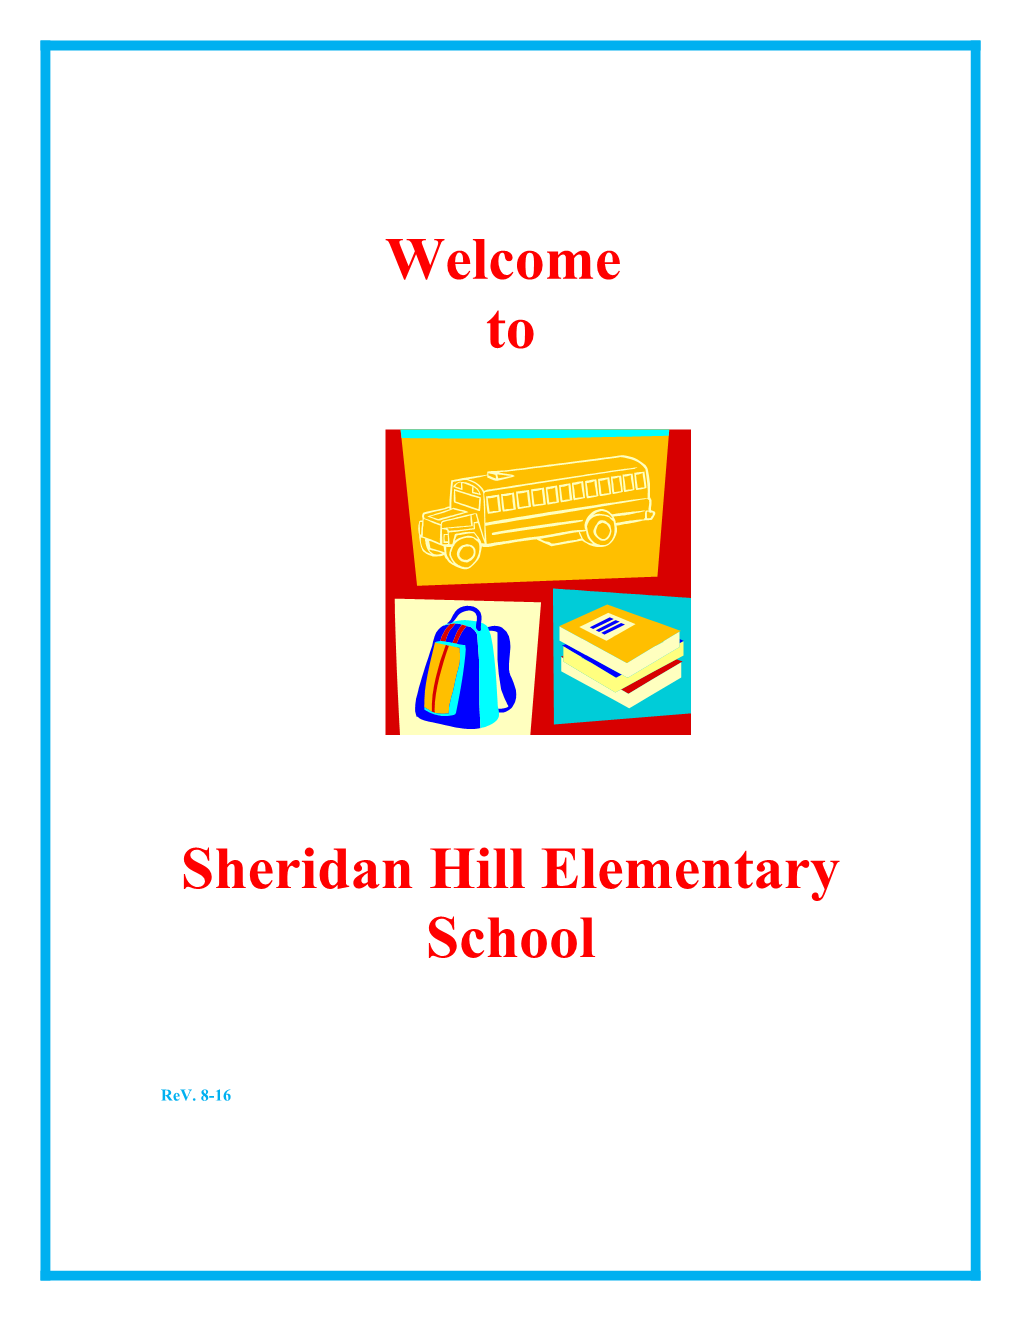 Sheridan Hill Elementary School